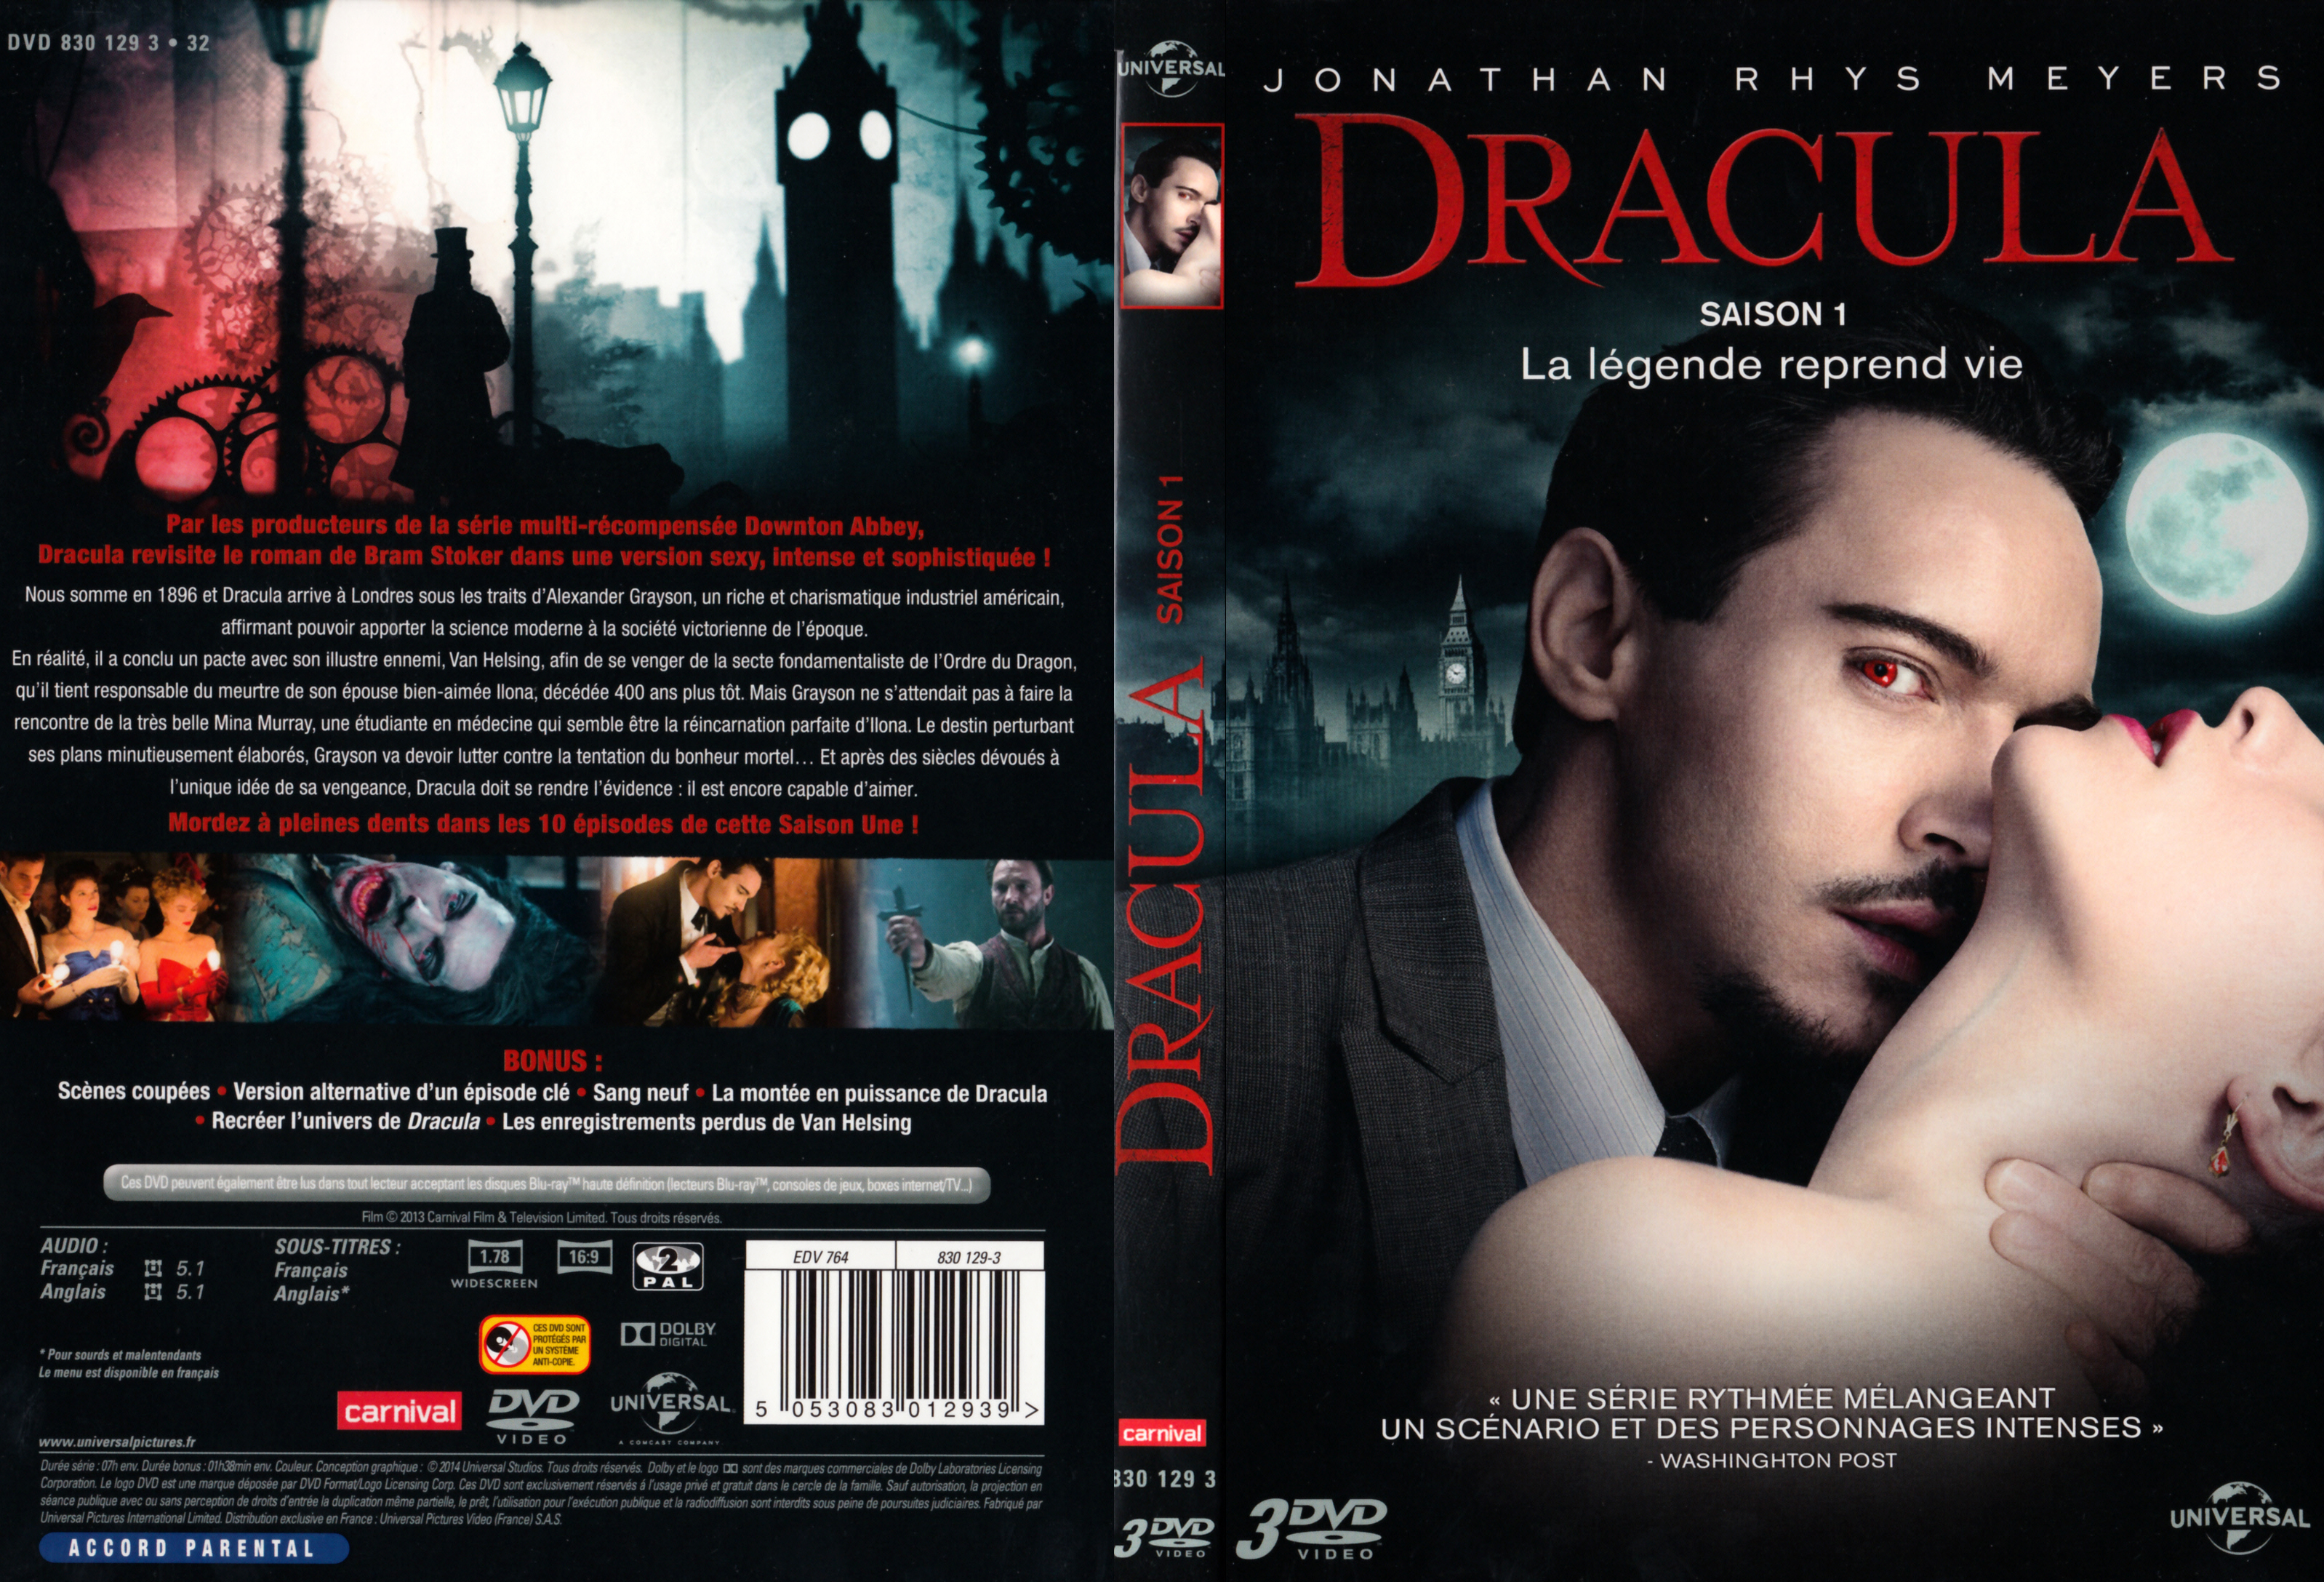 Jaquette DVD Dracula Saison 1